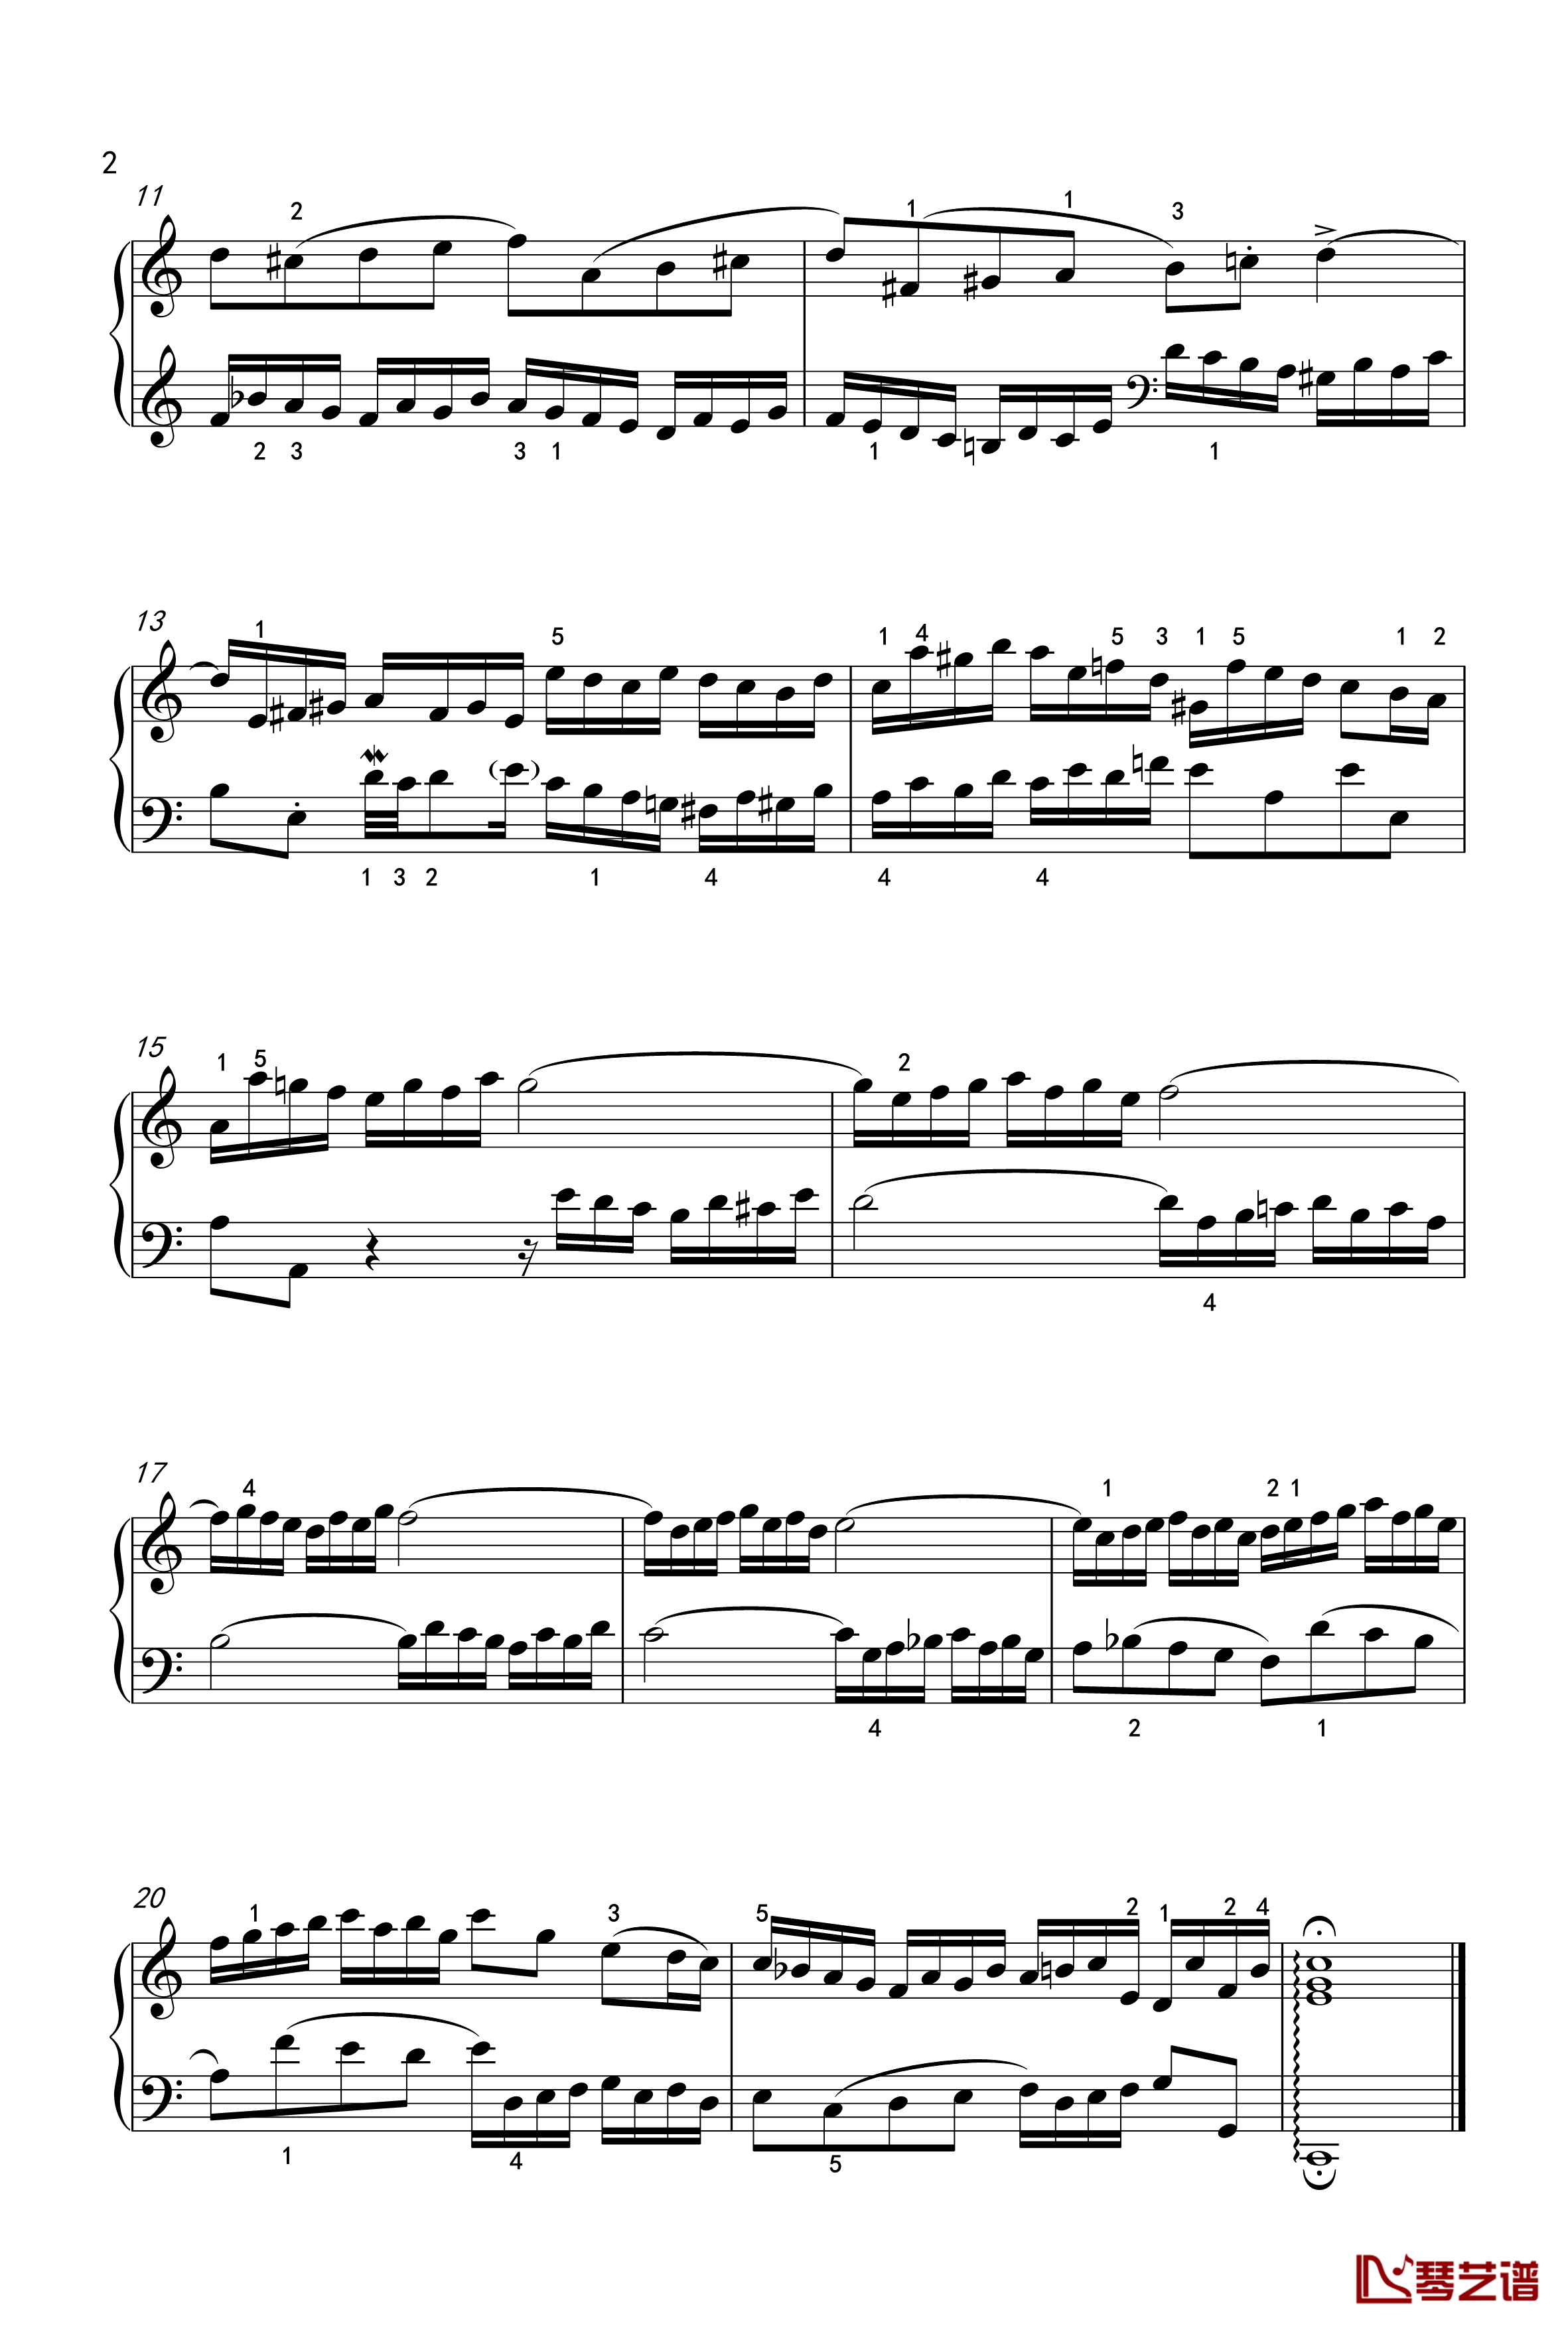 二部创意曲钢琴谱-1-BWV-772-巴赫-P.E.Bach2